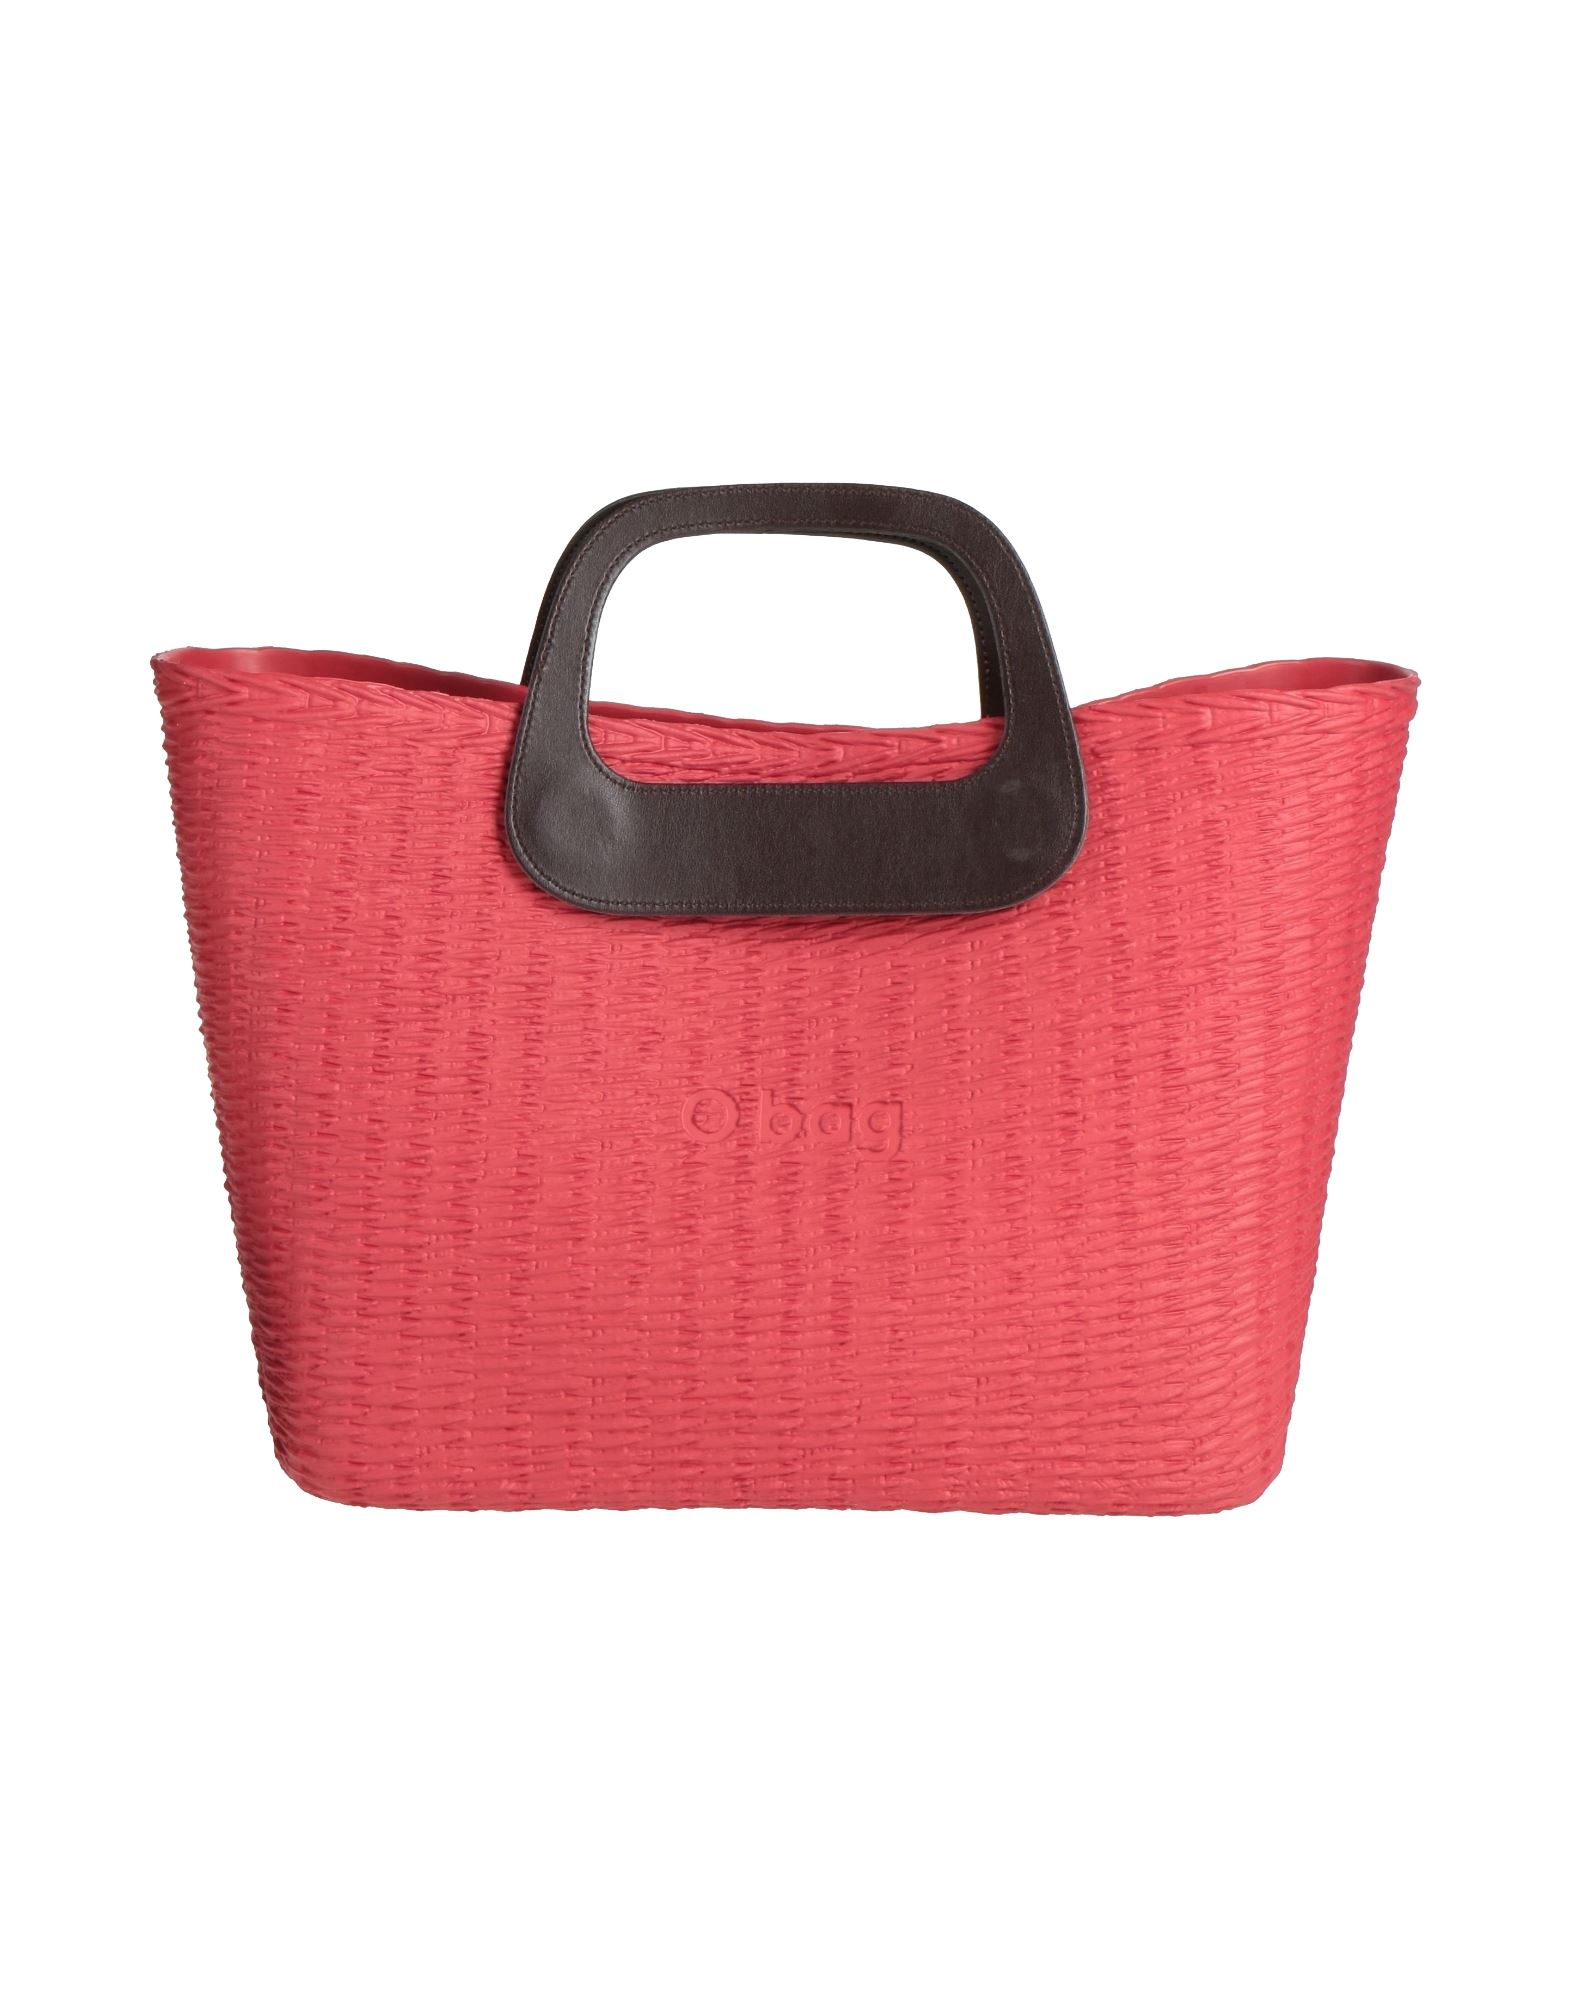 O Bag Handbags In Red